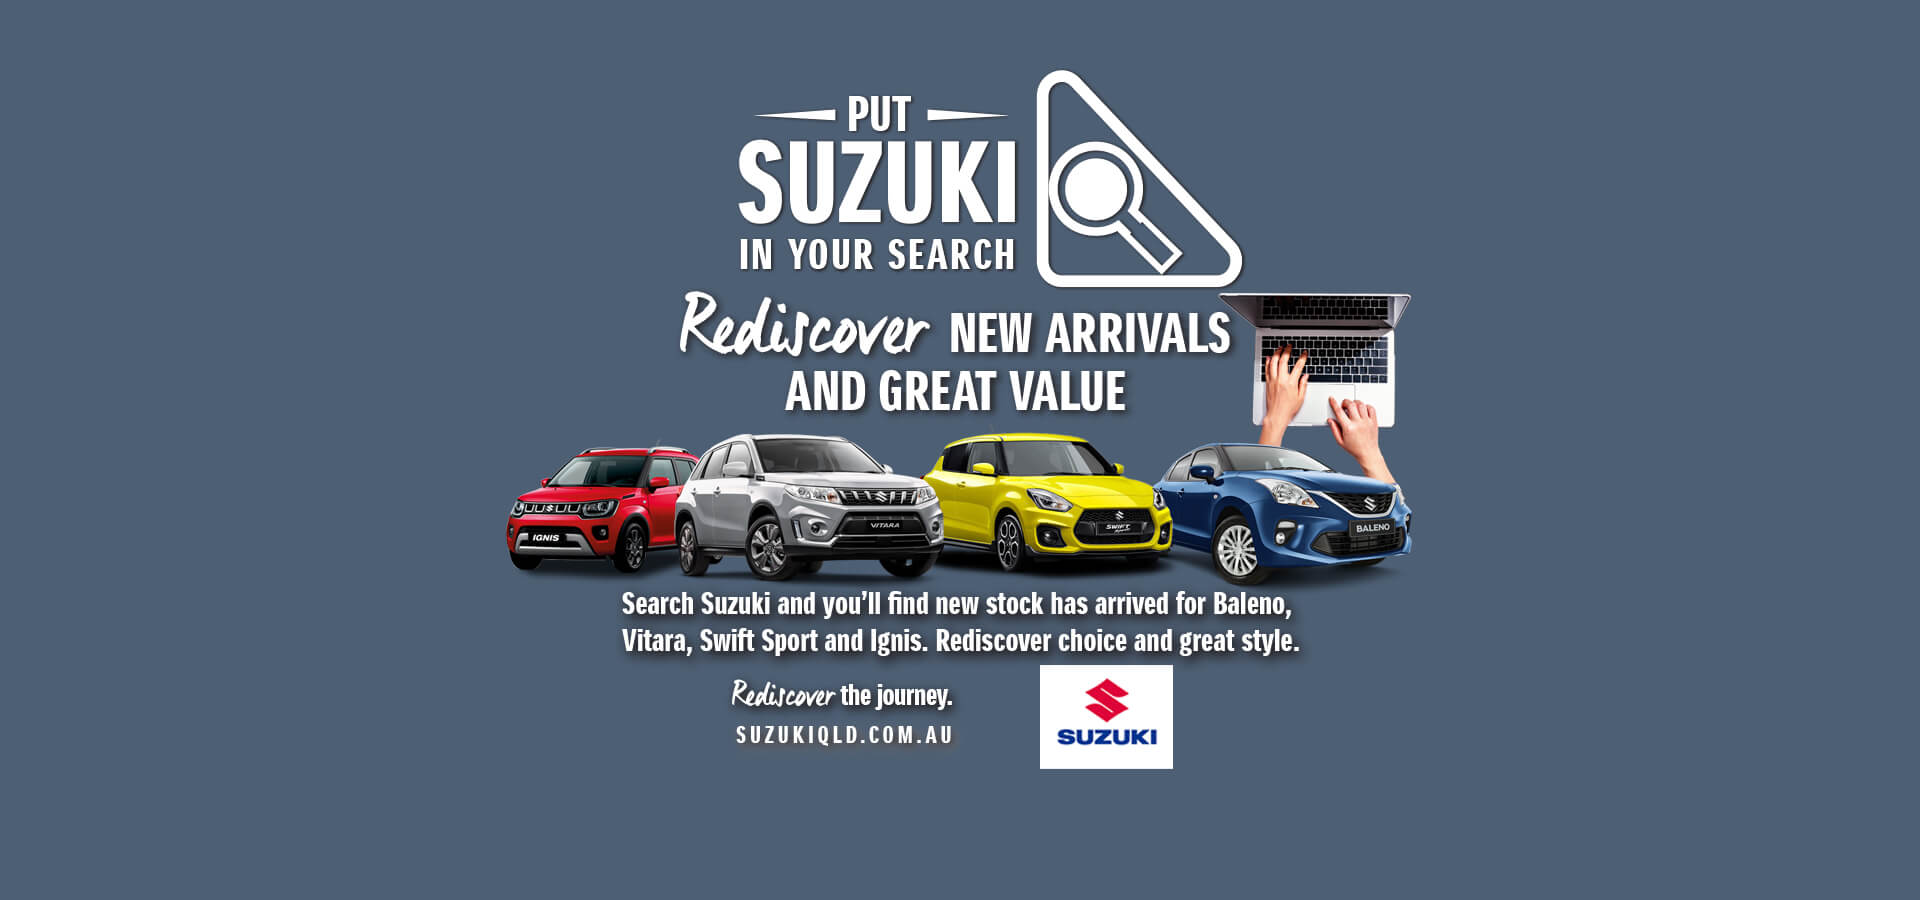 Suzuki Queensland Offers